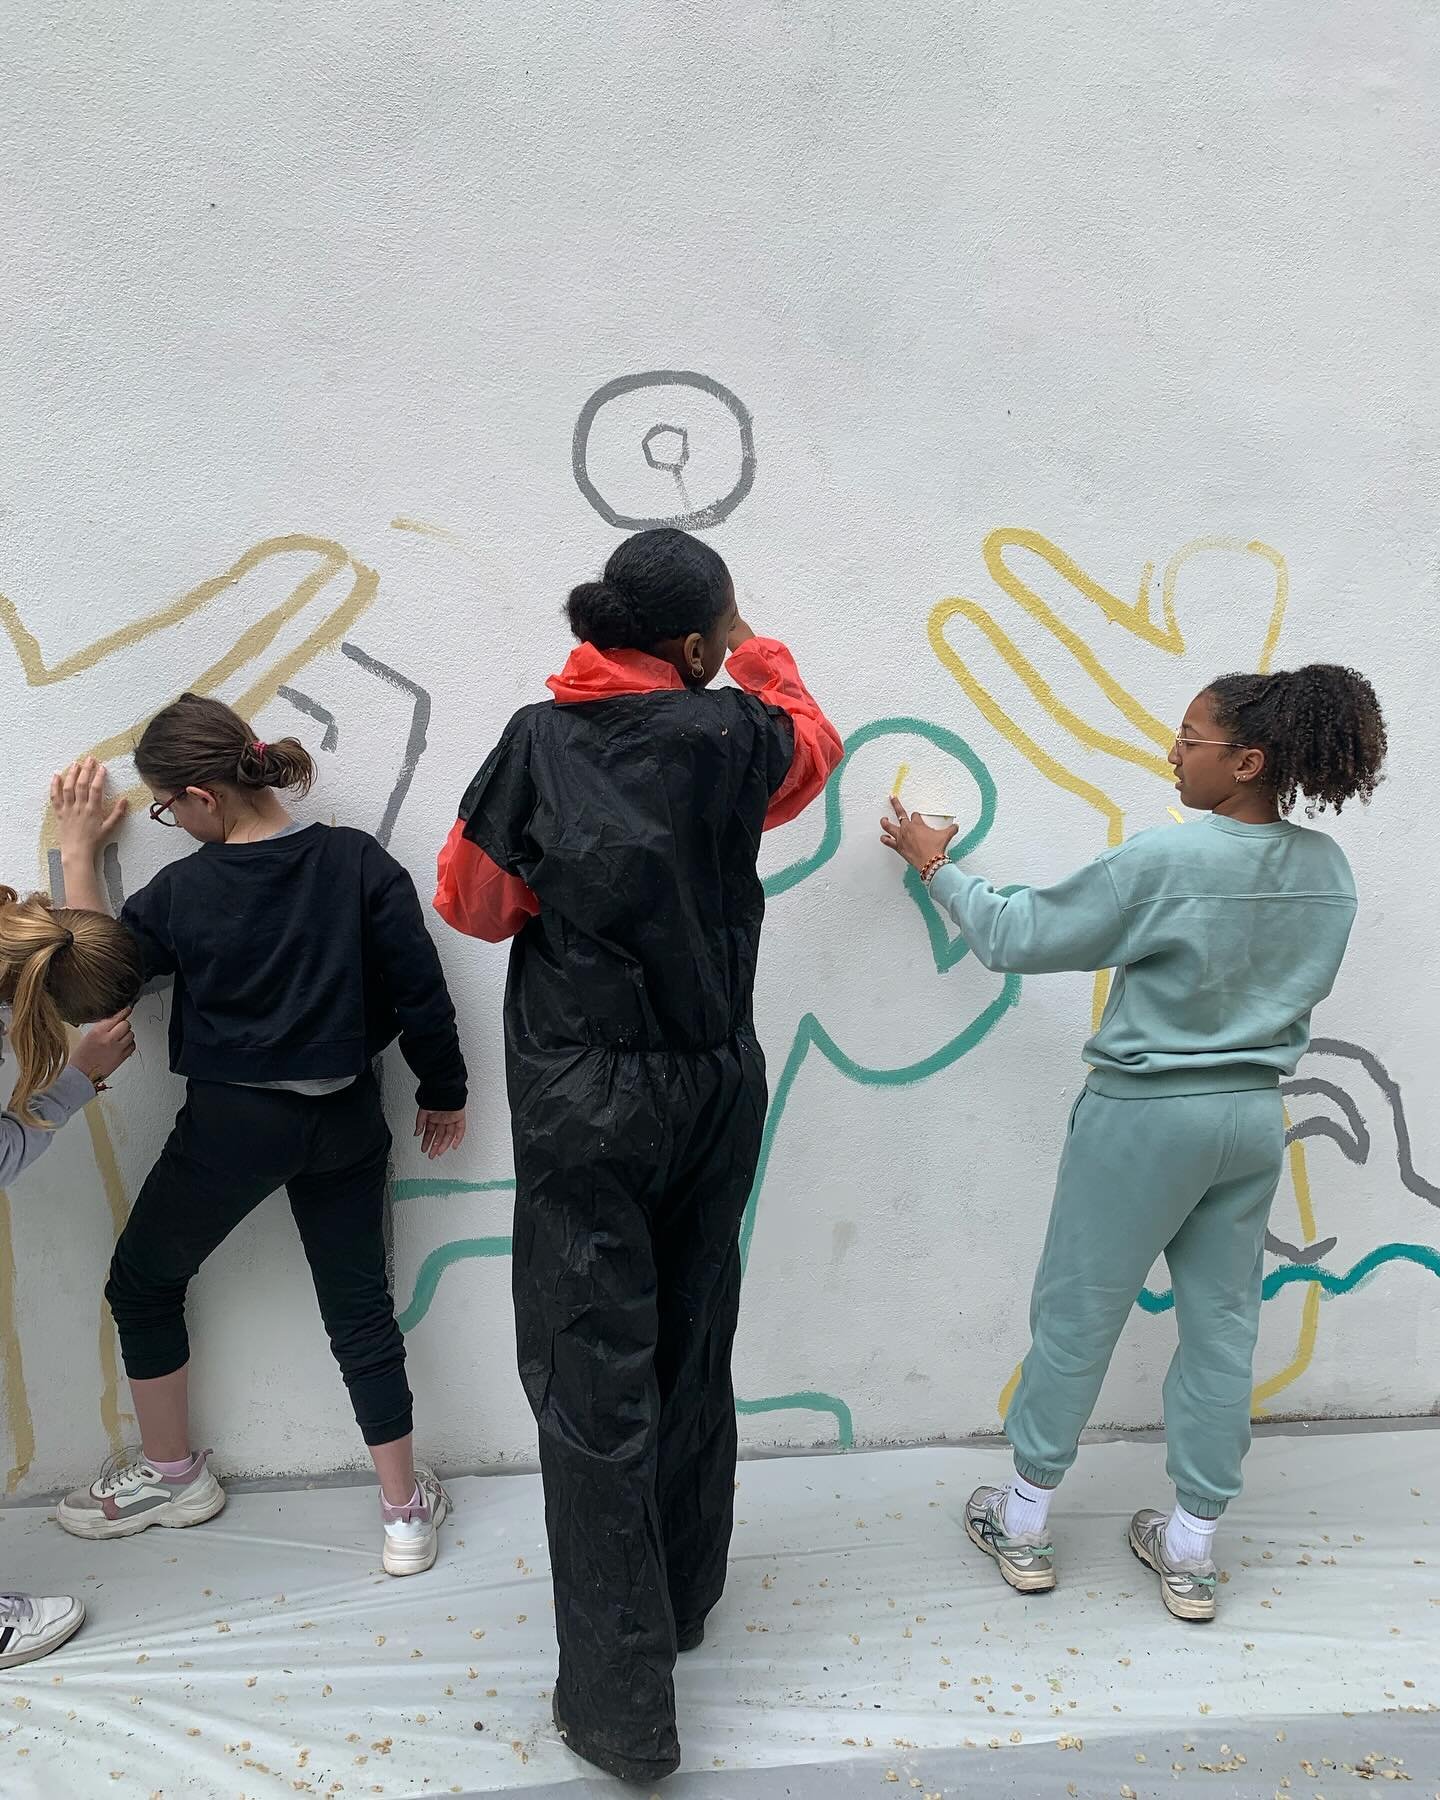 Laisse une trace sur le mur du coll&egrave;ge Jean Jaur&egrave;s de Levallois Perret 🤩 les jeunes participants se transforment en mod&egrave;les et artistes! La fresque en mouvement ! 

#collegejeanjaures @villelevallois #fresque @kulturelia #mouvem